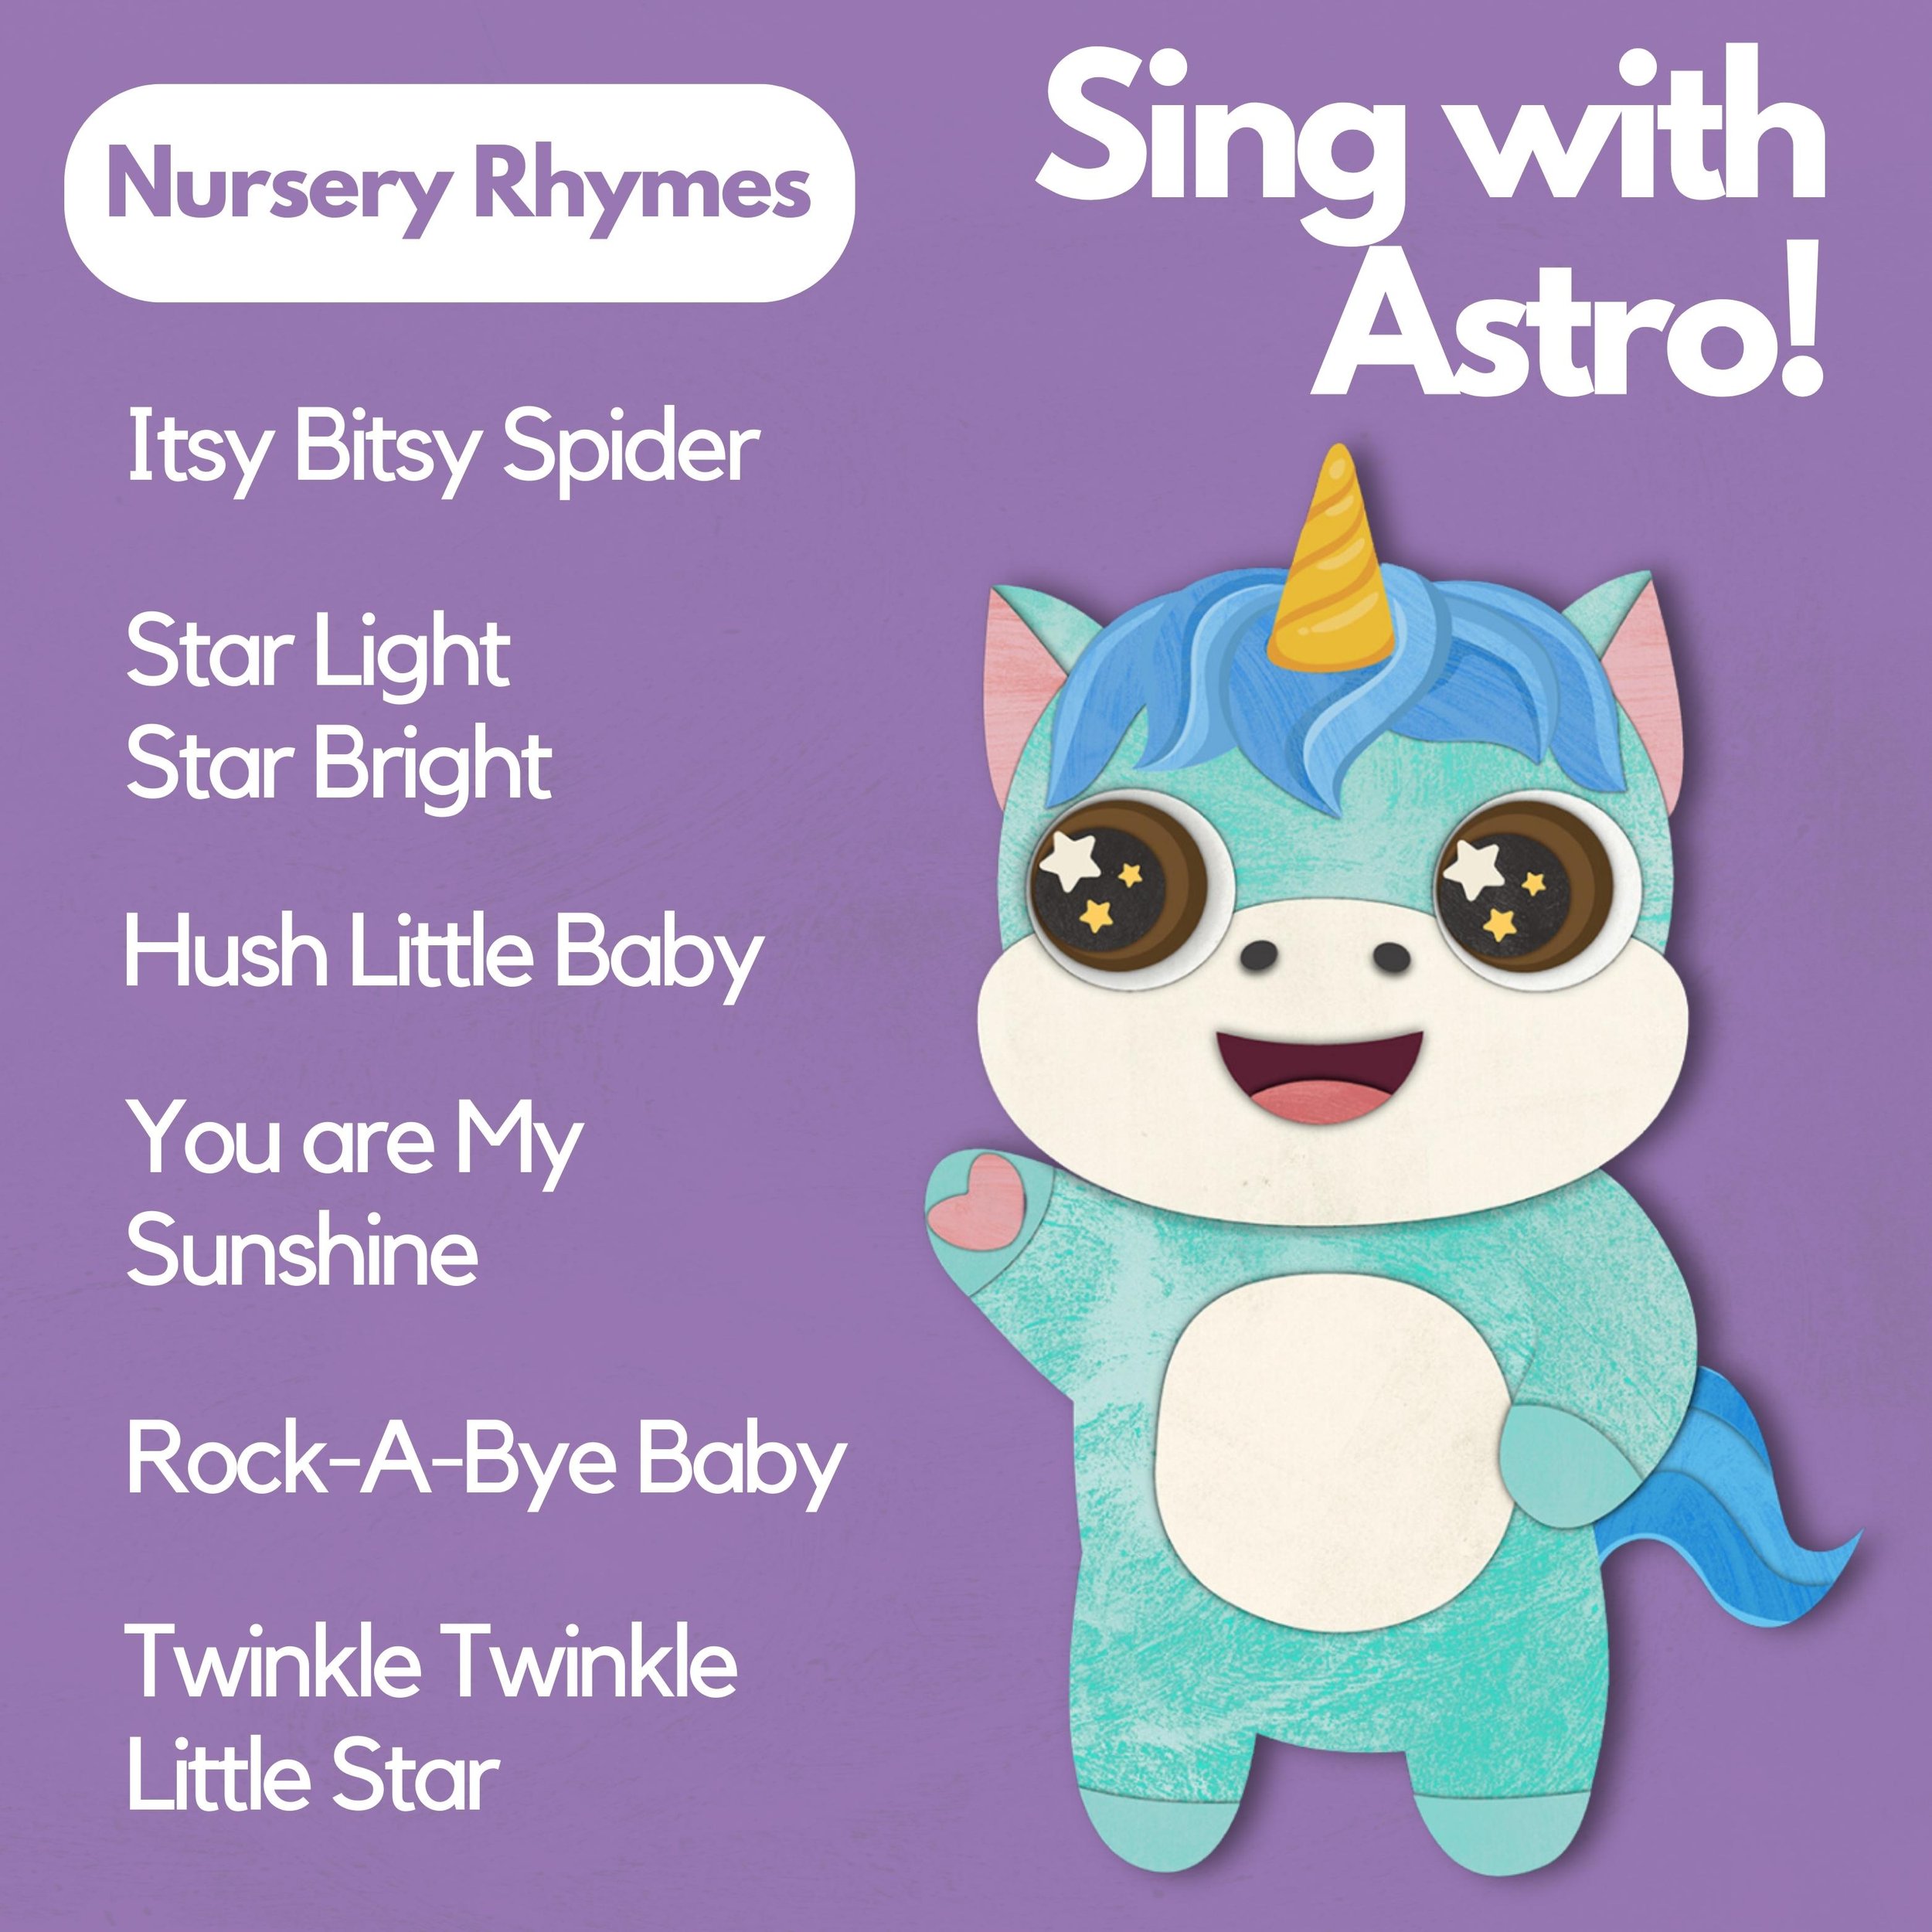 Astro Learns English: Nursery Rhymes